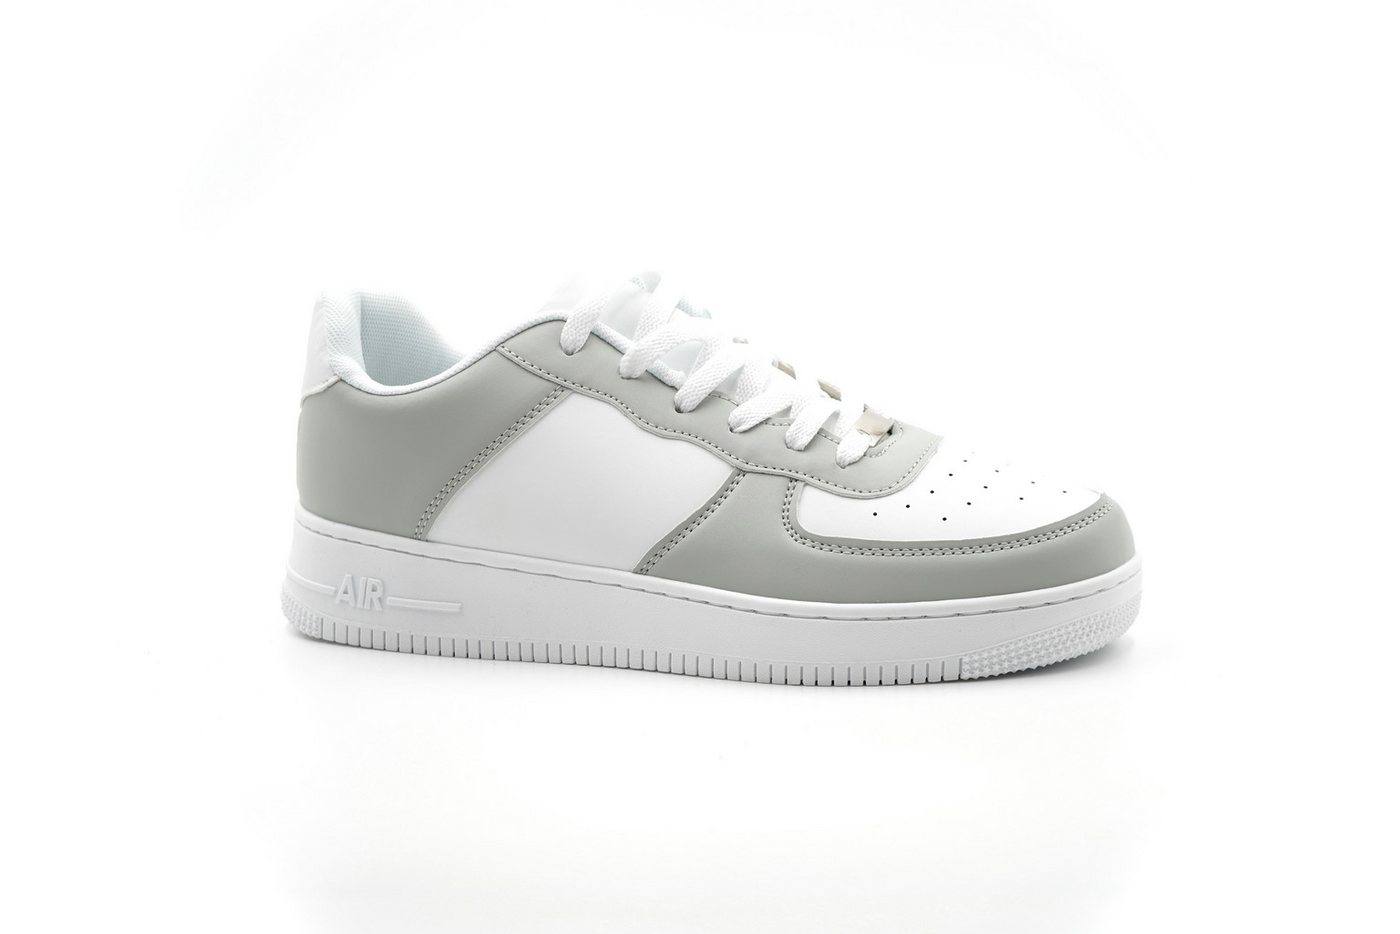 Sonderpostendiscount Herren Unisex Sneaker G13 White/Grey Sneaker Guter Tragekomfort von Sonderpostendiscount